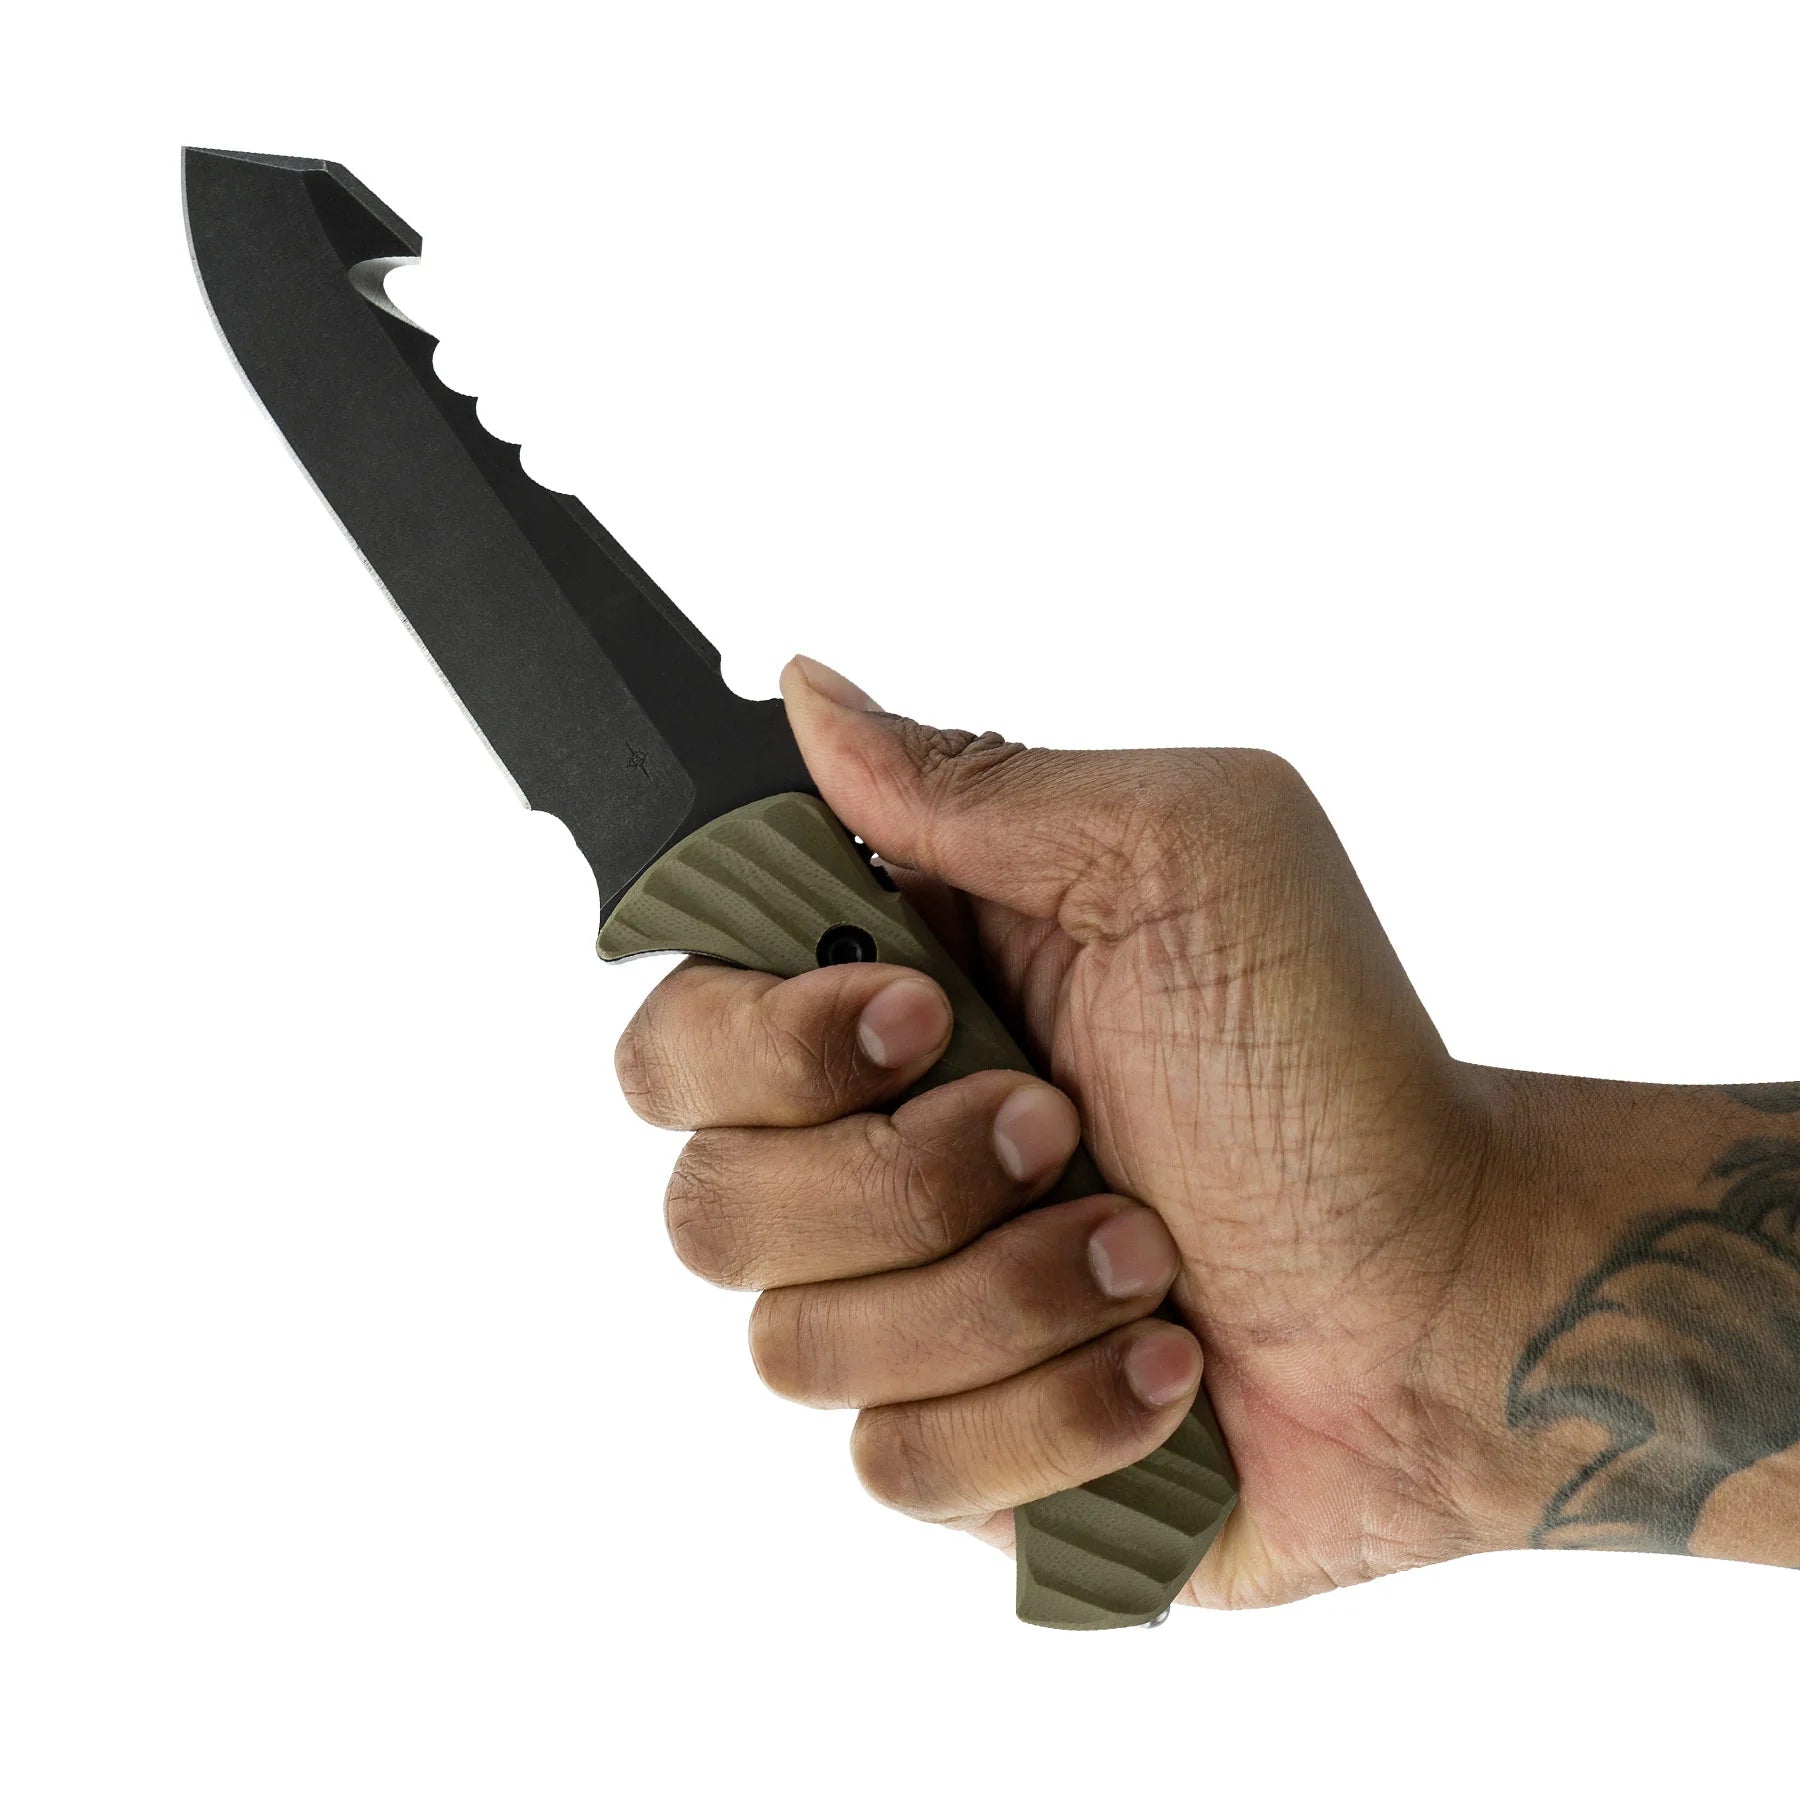 Couteau de survie Egress - Toor Knives-T.A DEFENSE